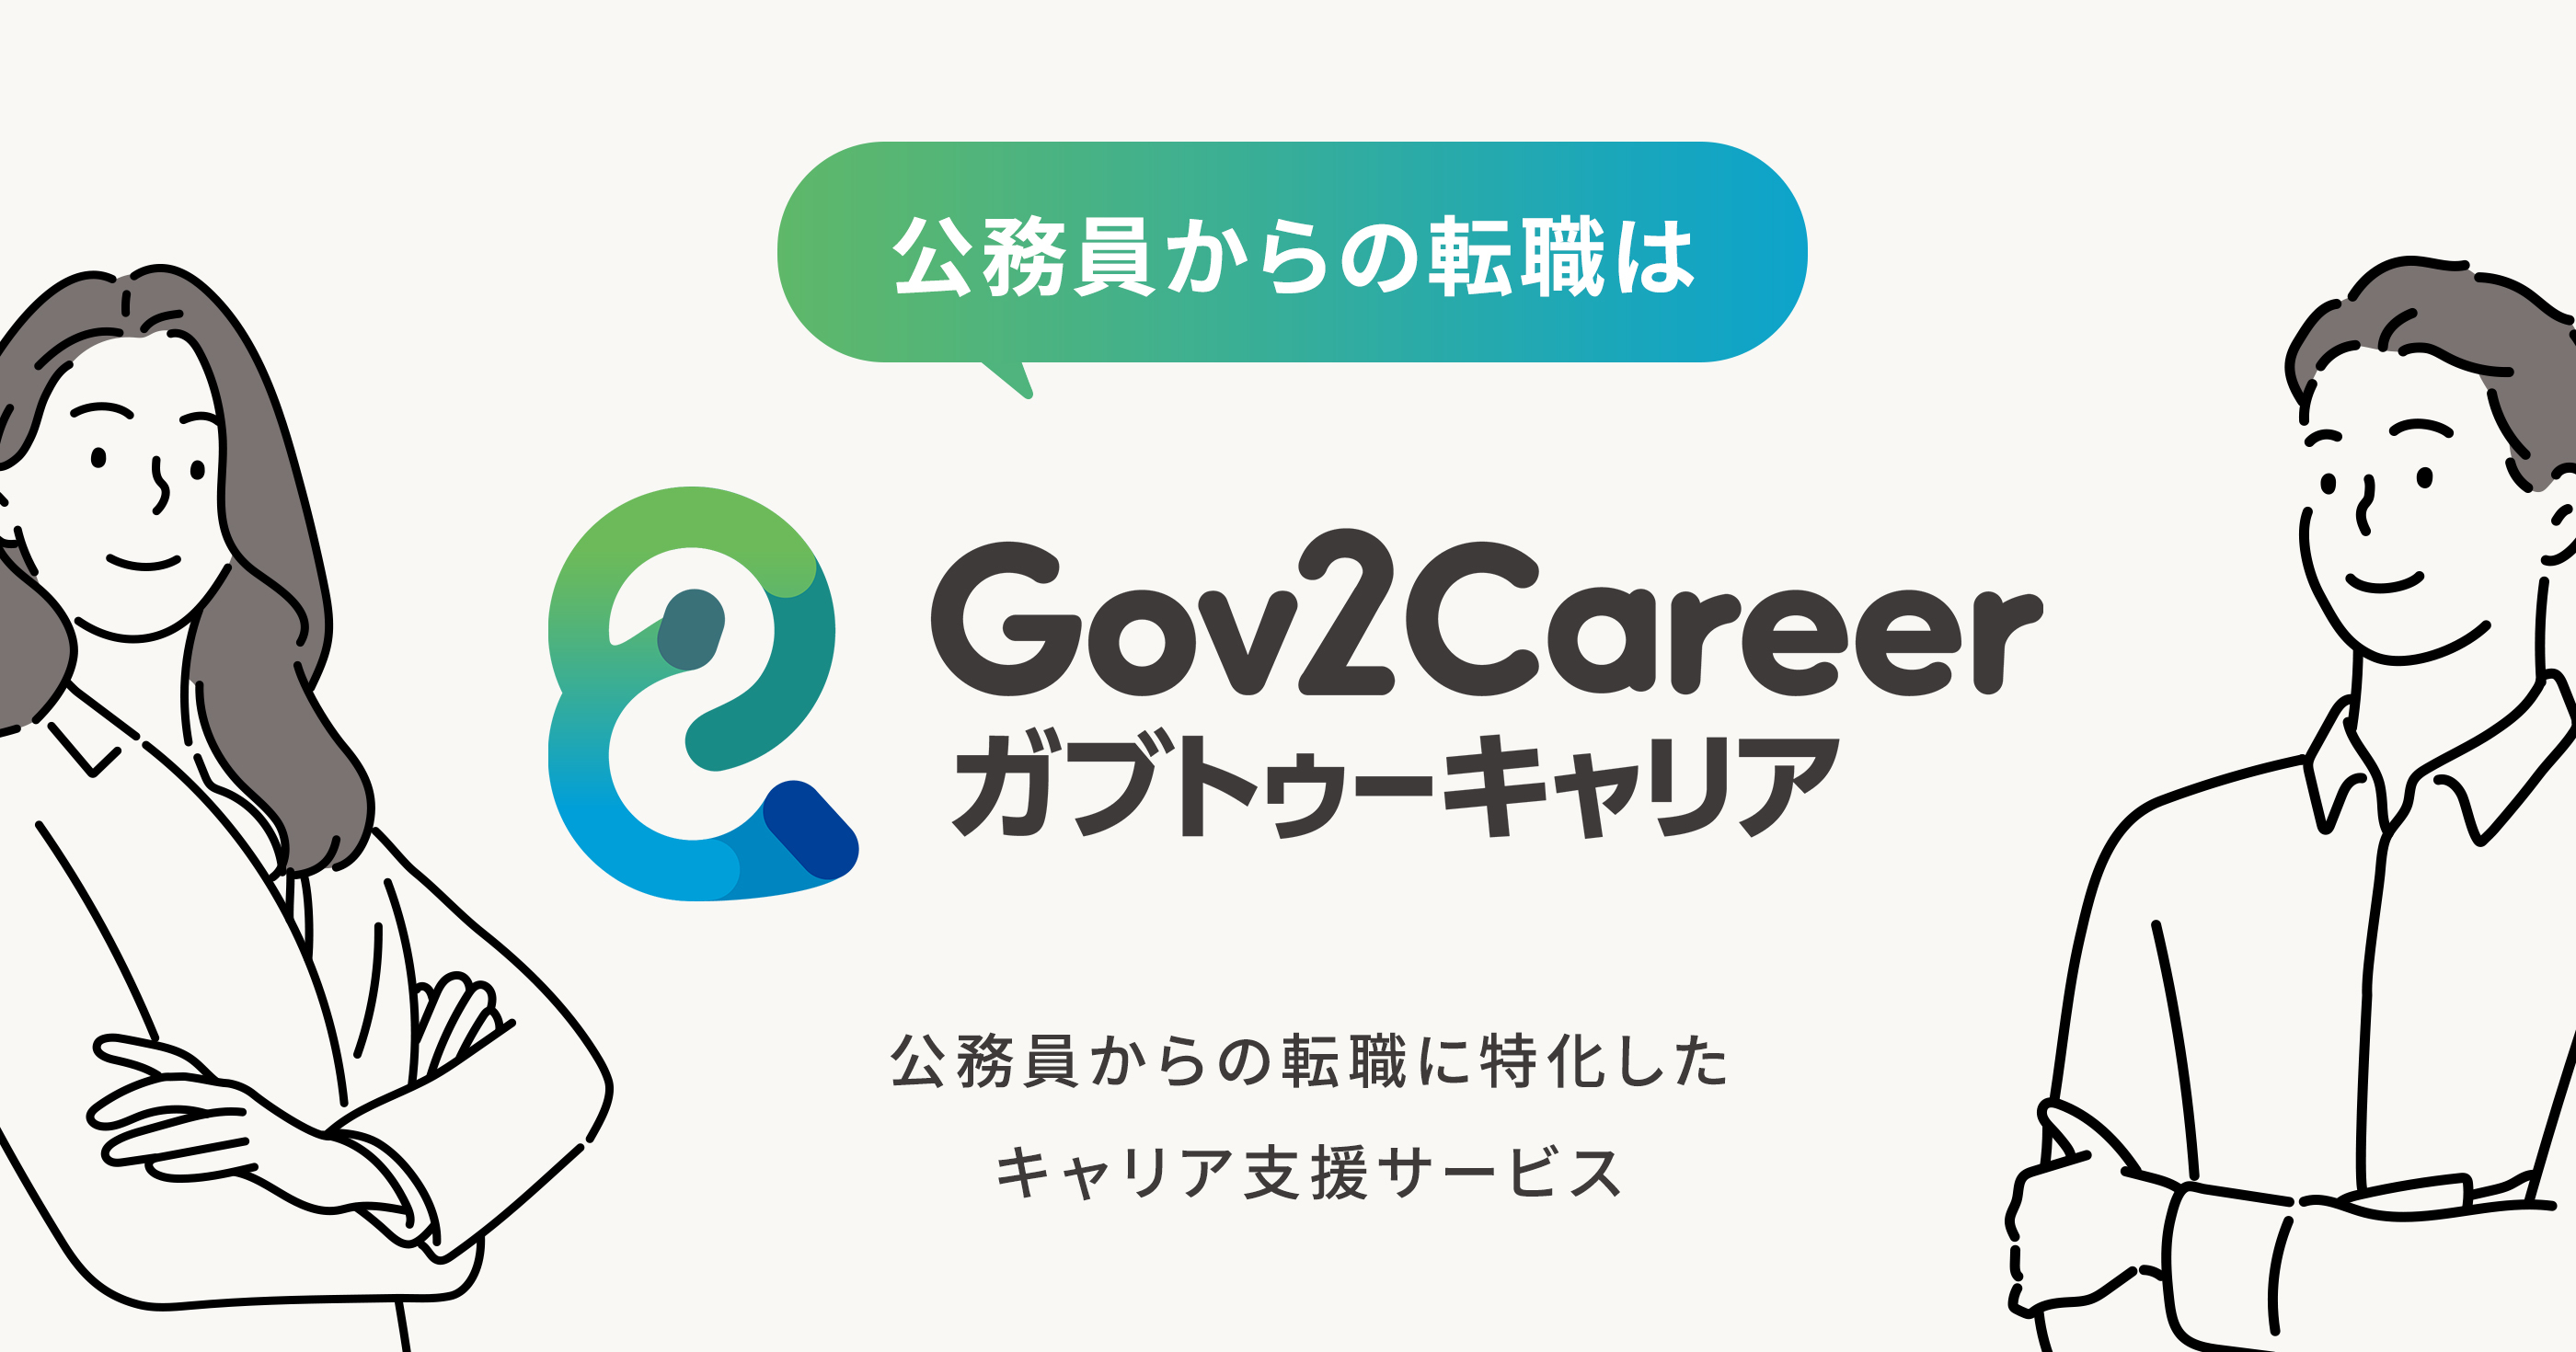 公務員からの転職に特化したキャリア支援サービス「Gov2Career」の両面型コンサルタント